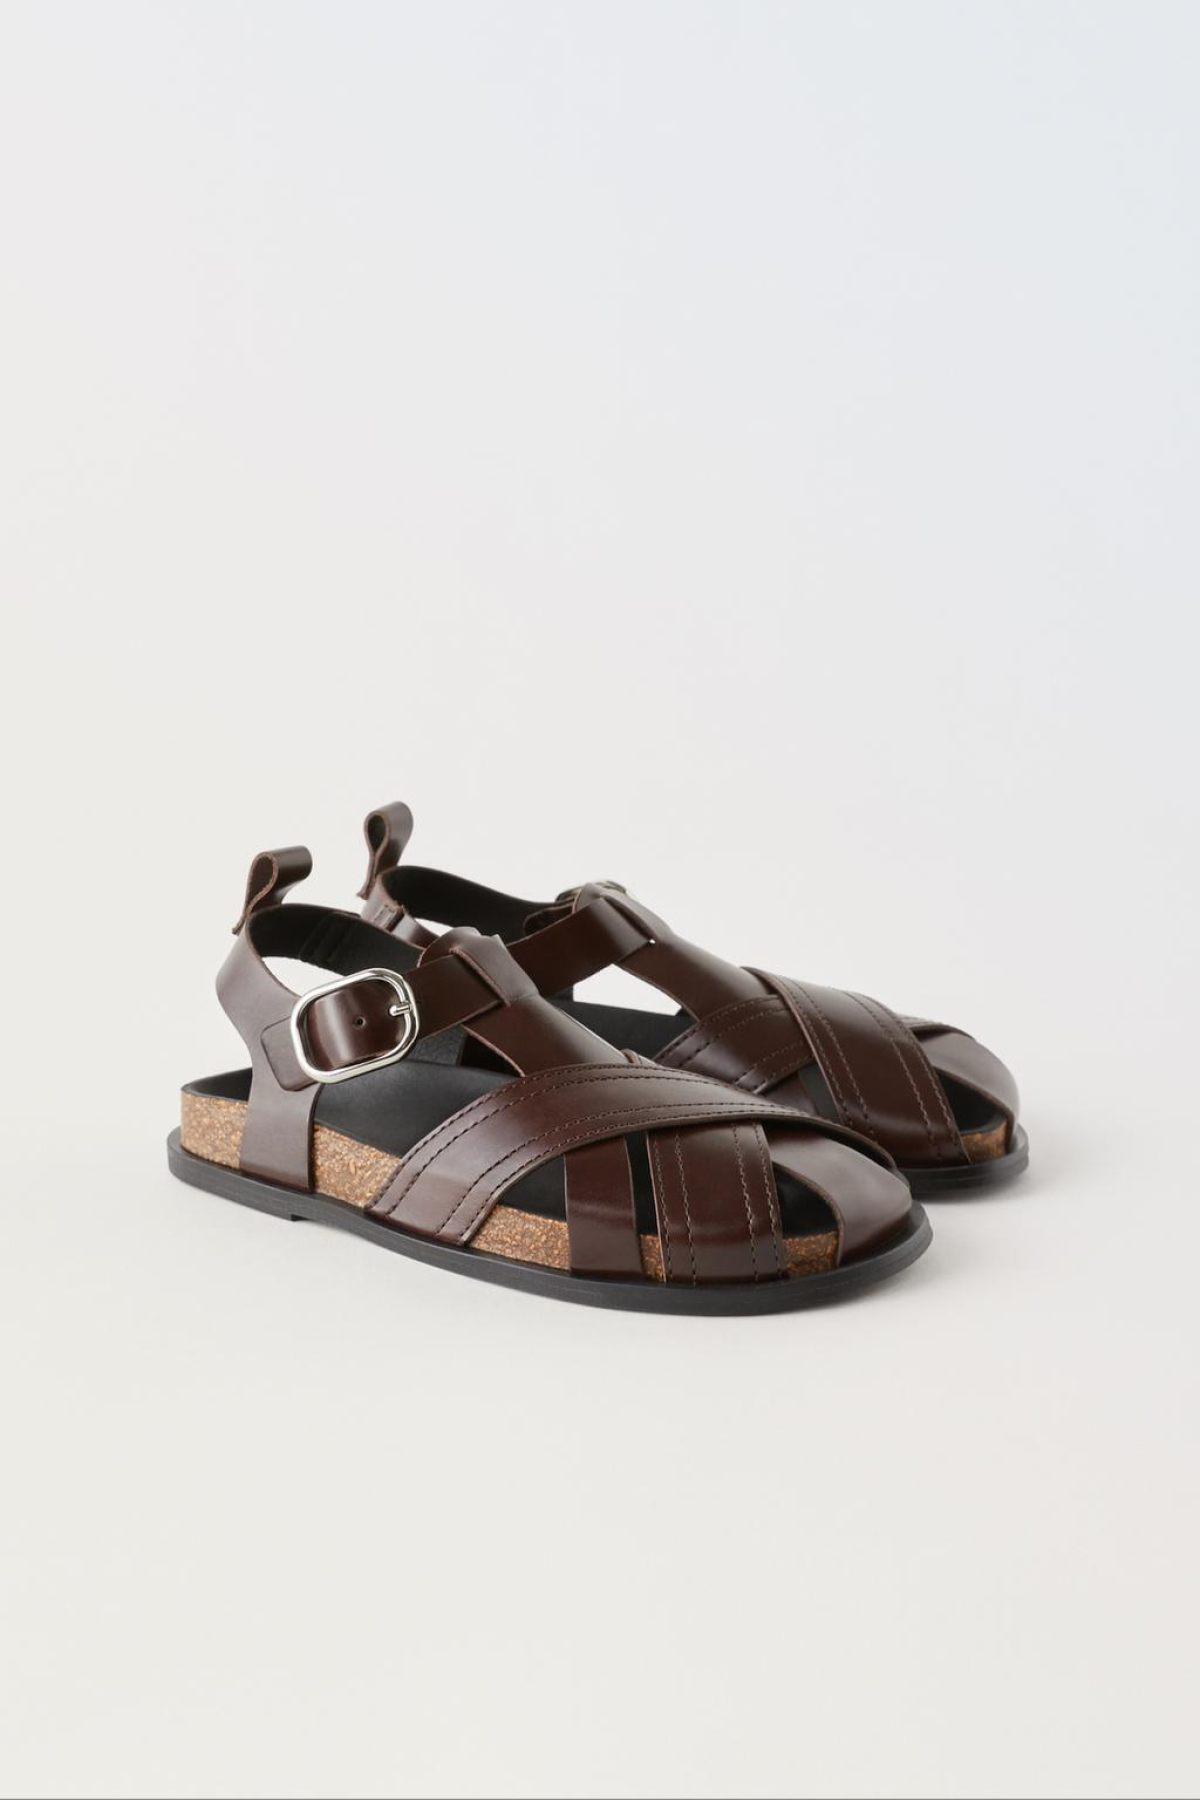 Kožnee sandale - 25,99 eur